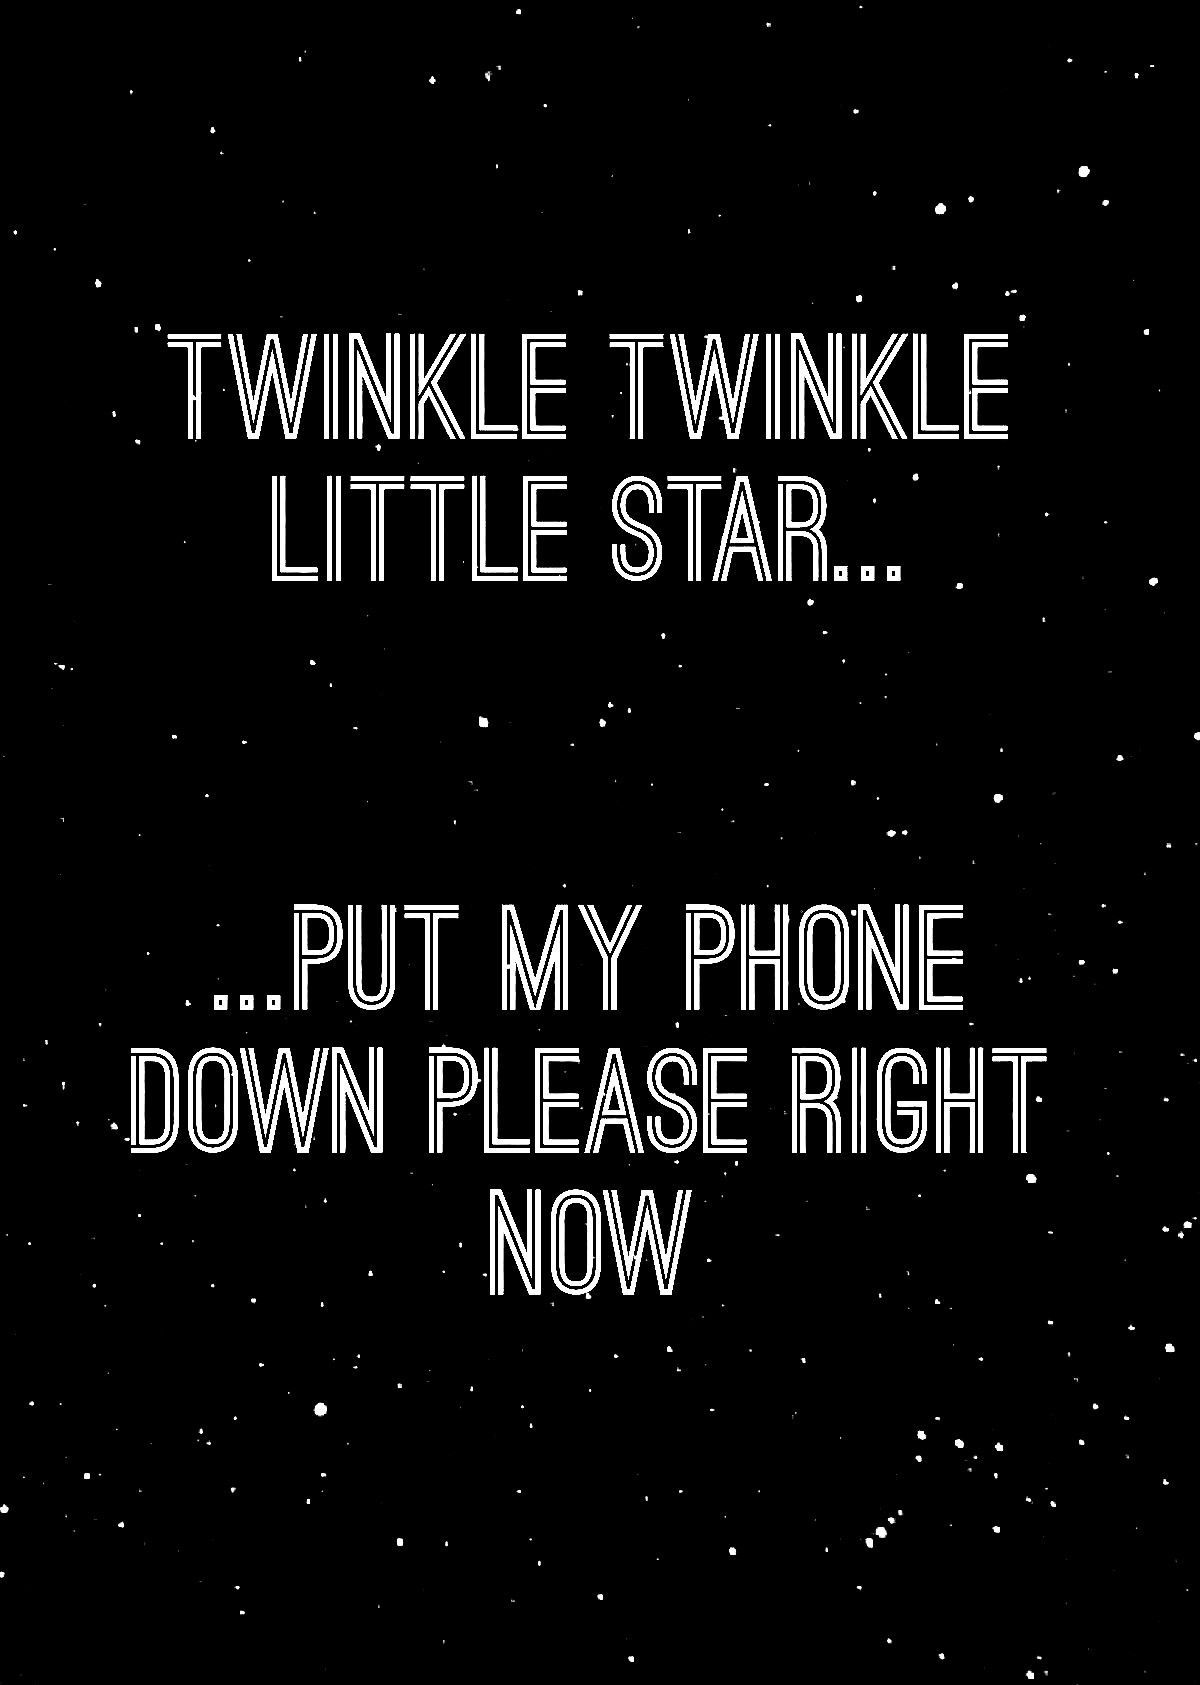 Wallpaper. Twinkle twinkle little star, Little star, Twinkle twinkle